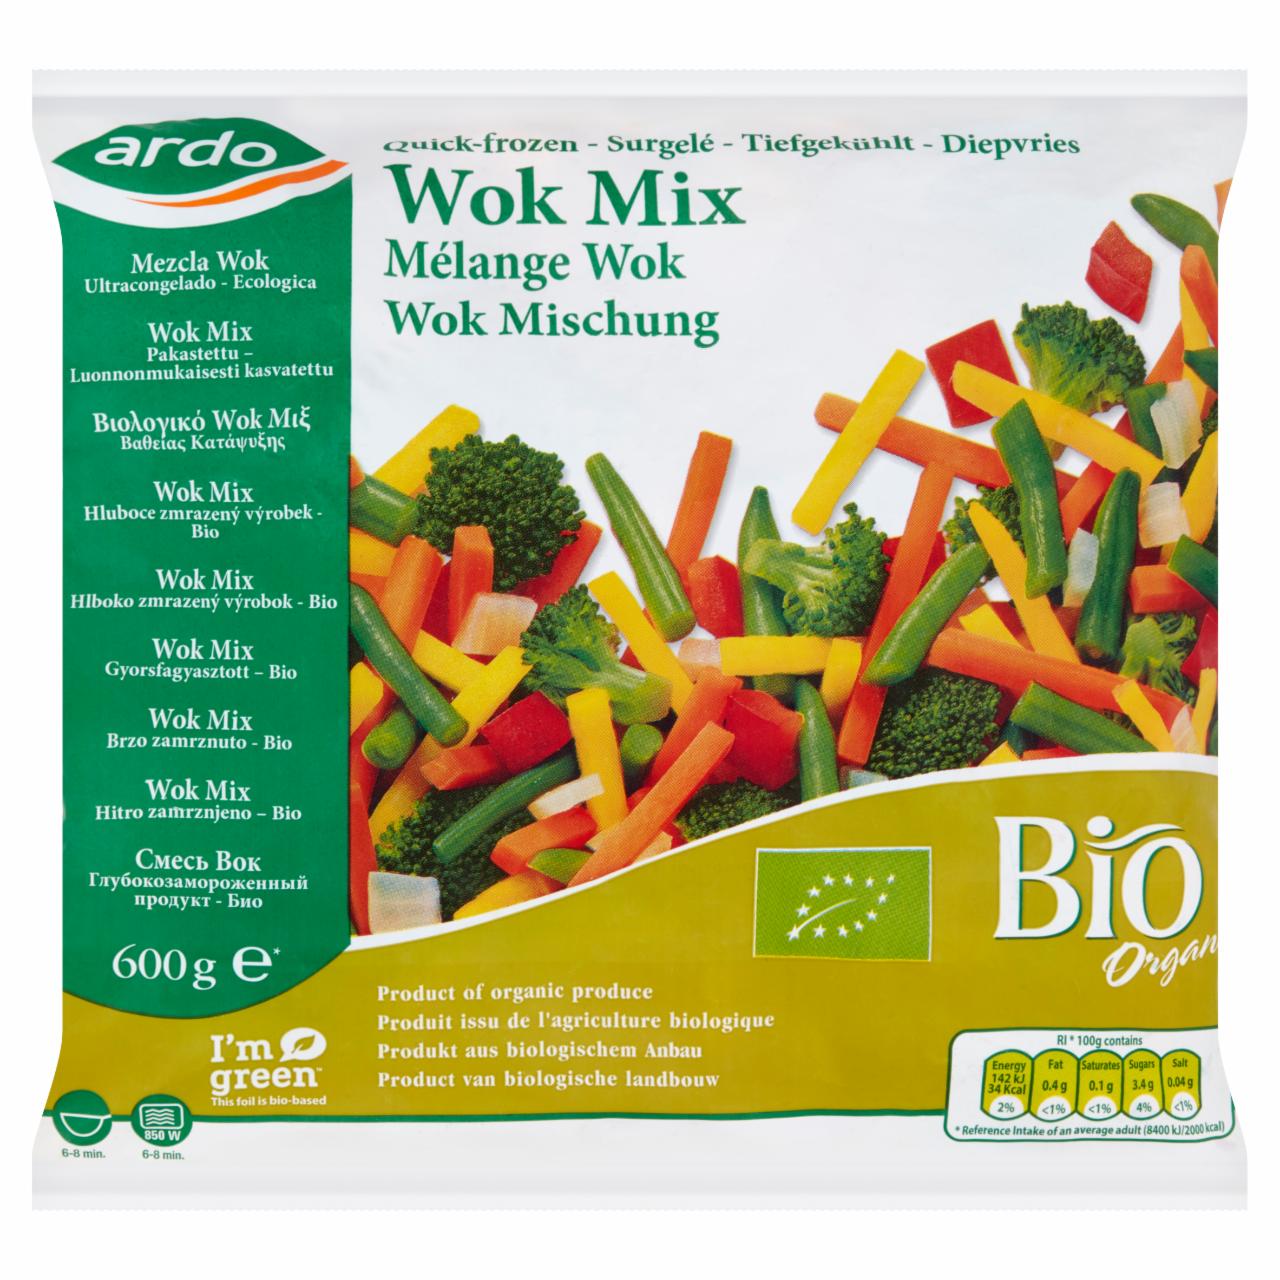 Képek - Ardo gyorsfagyasztott BIO wok mix 600 g